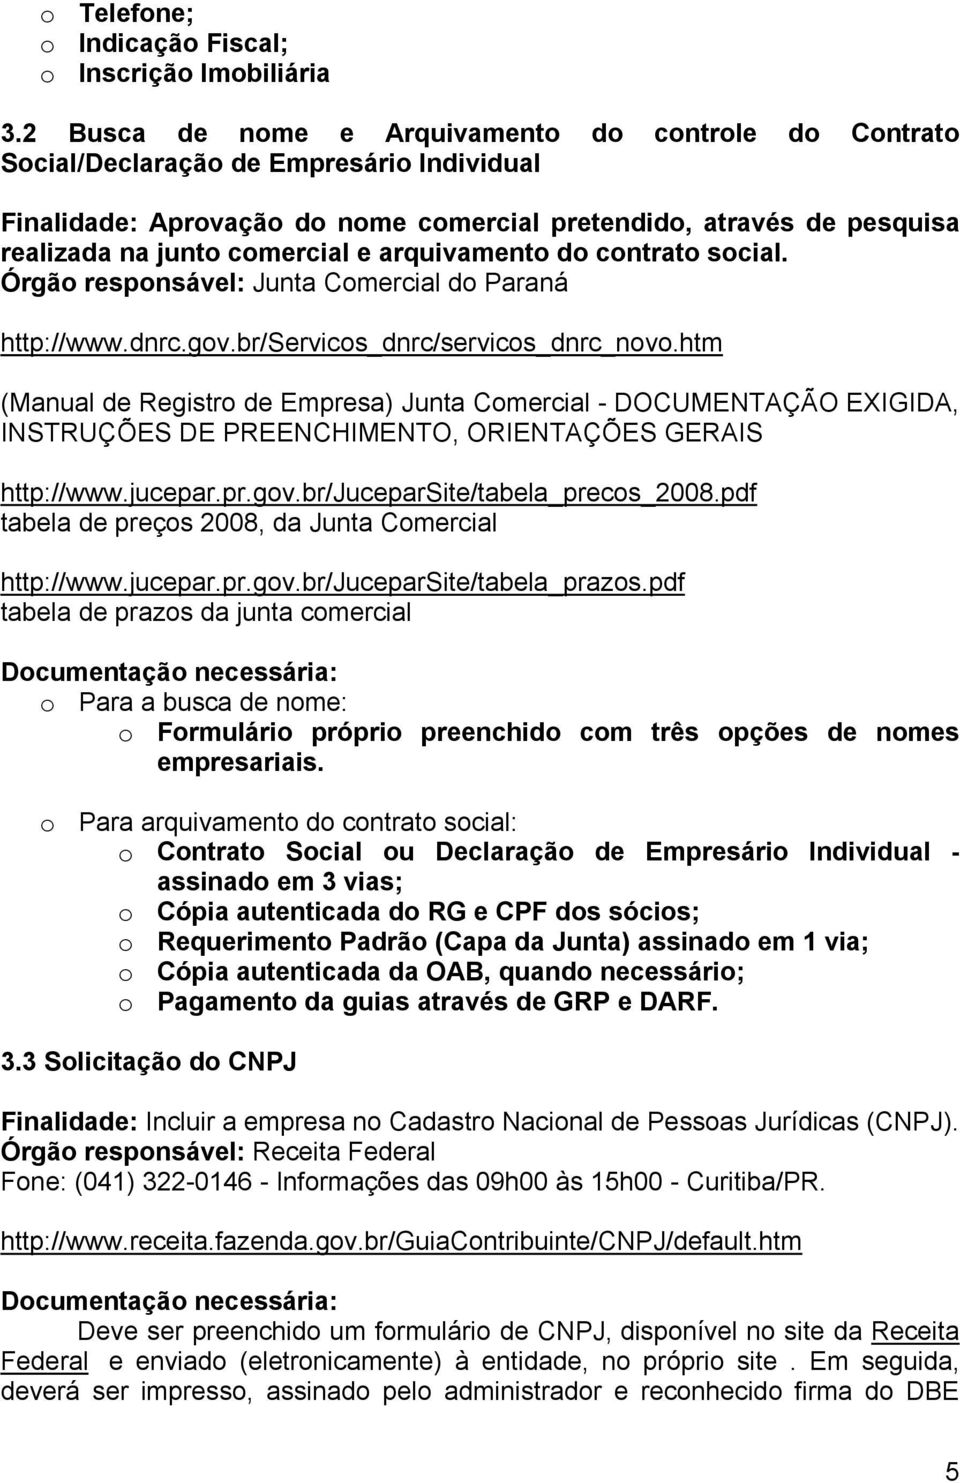 e arquivamento do contrato social. Órgão responsável: Junta Comercial do Paraná http://www.dnrc.gov.br/servicos_dnrc/servicos_dnrc_novo.